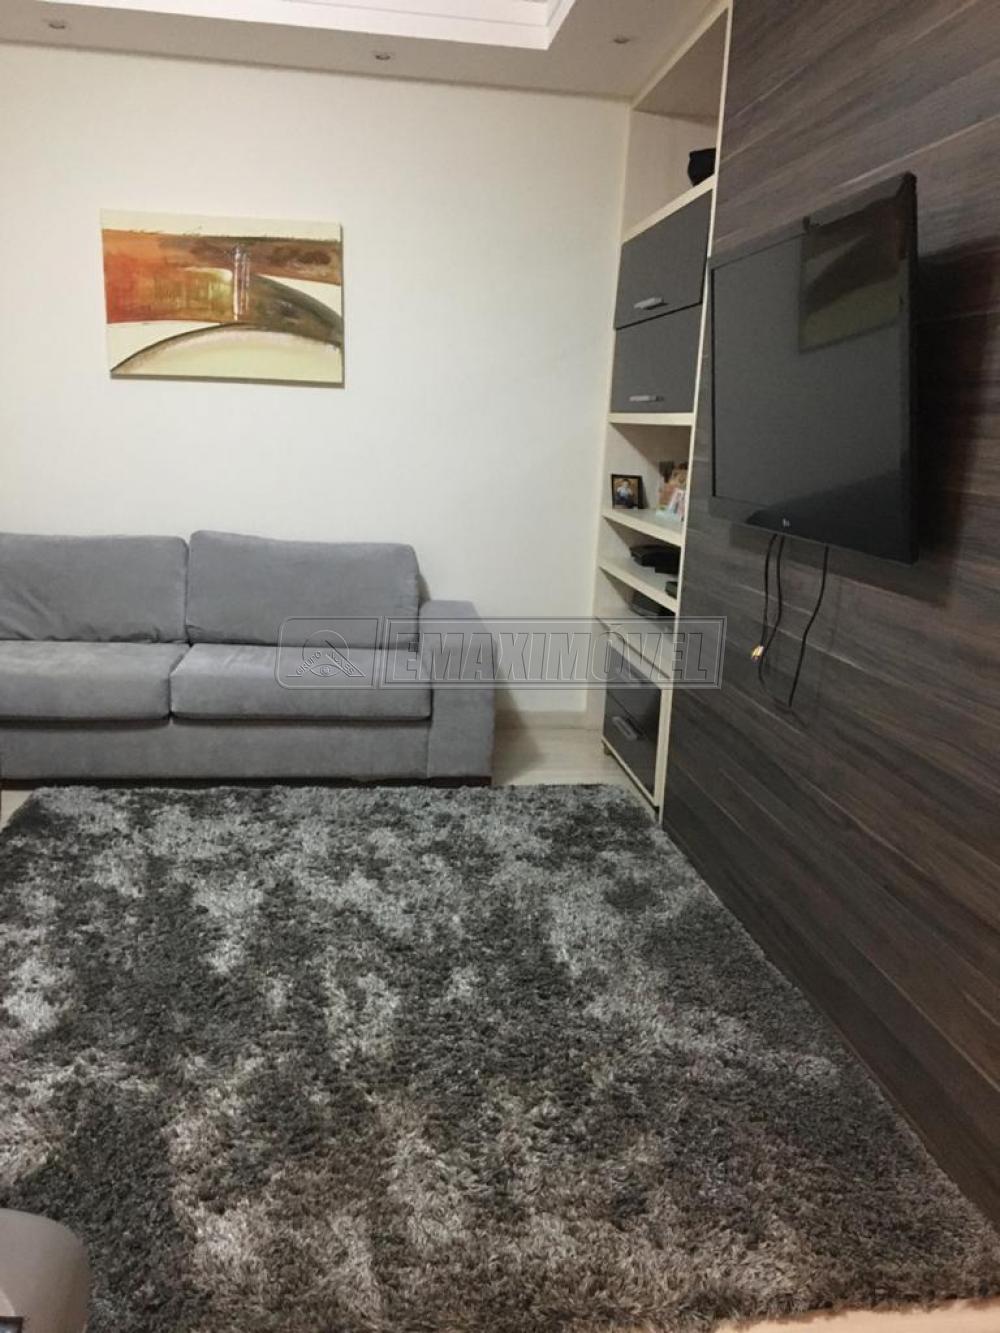 Alugar Casa / em Condomínios em Sorocaba R$ 8.000,00 - Foto 8